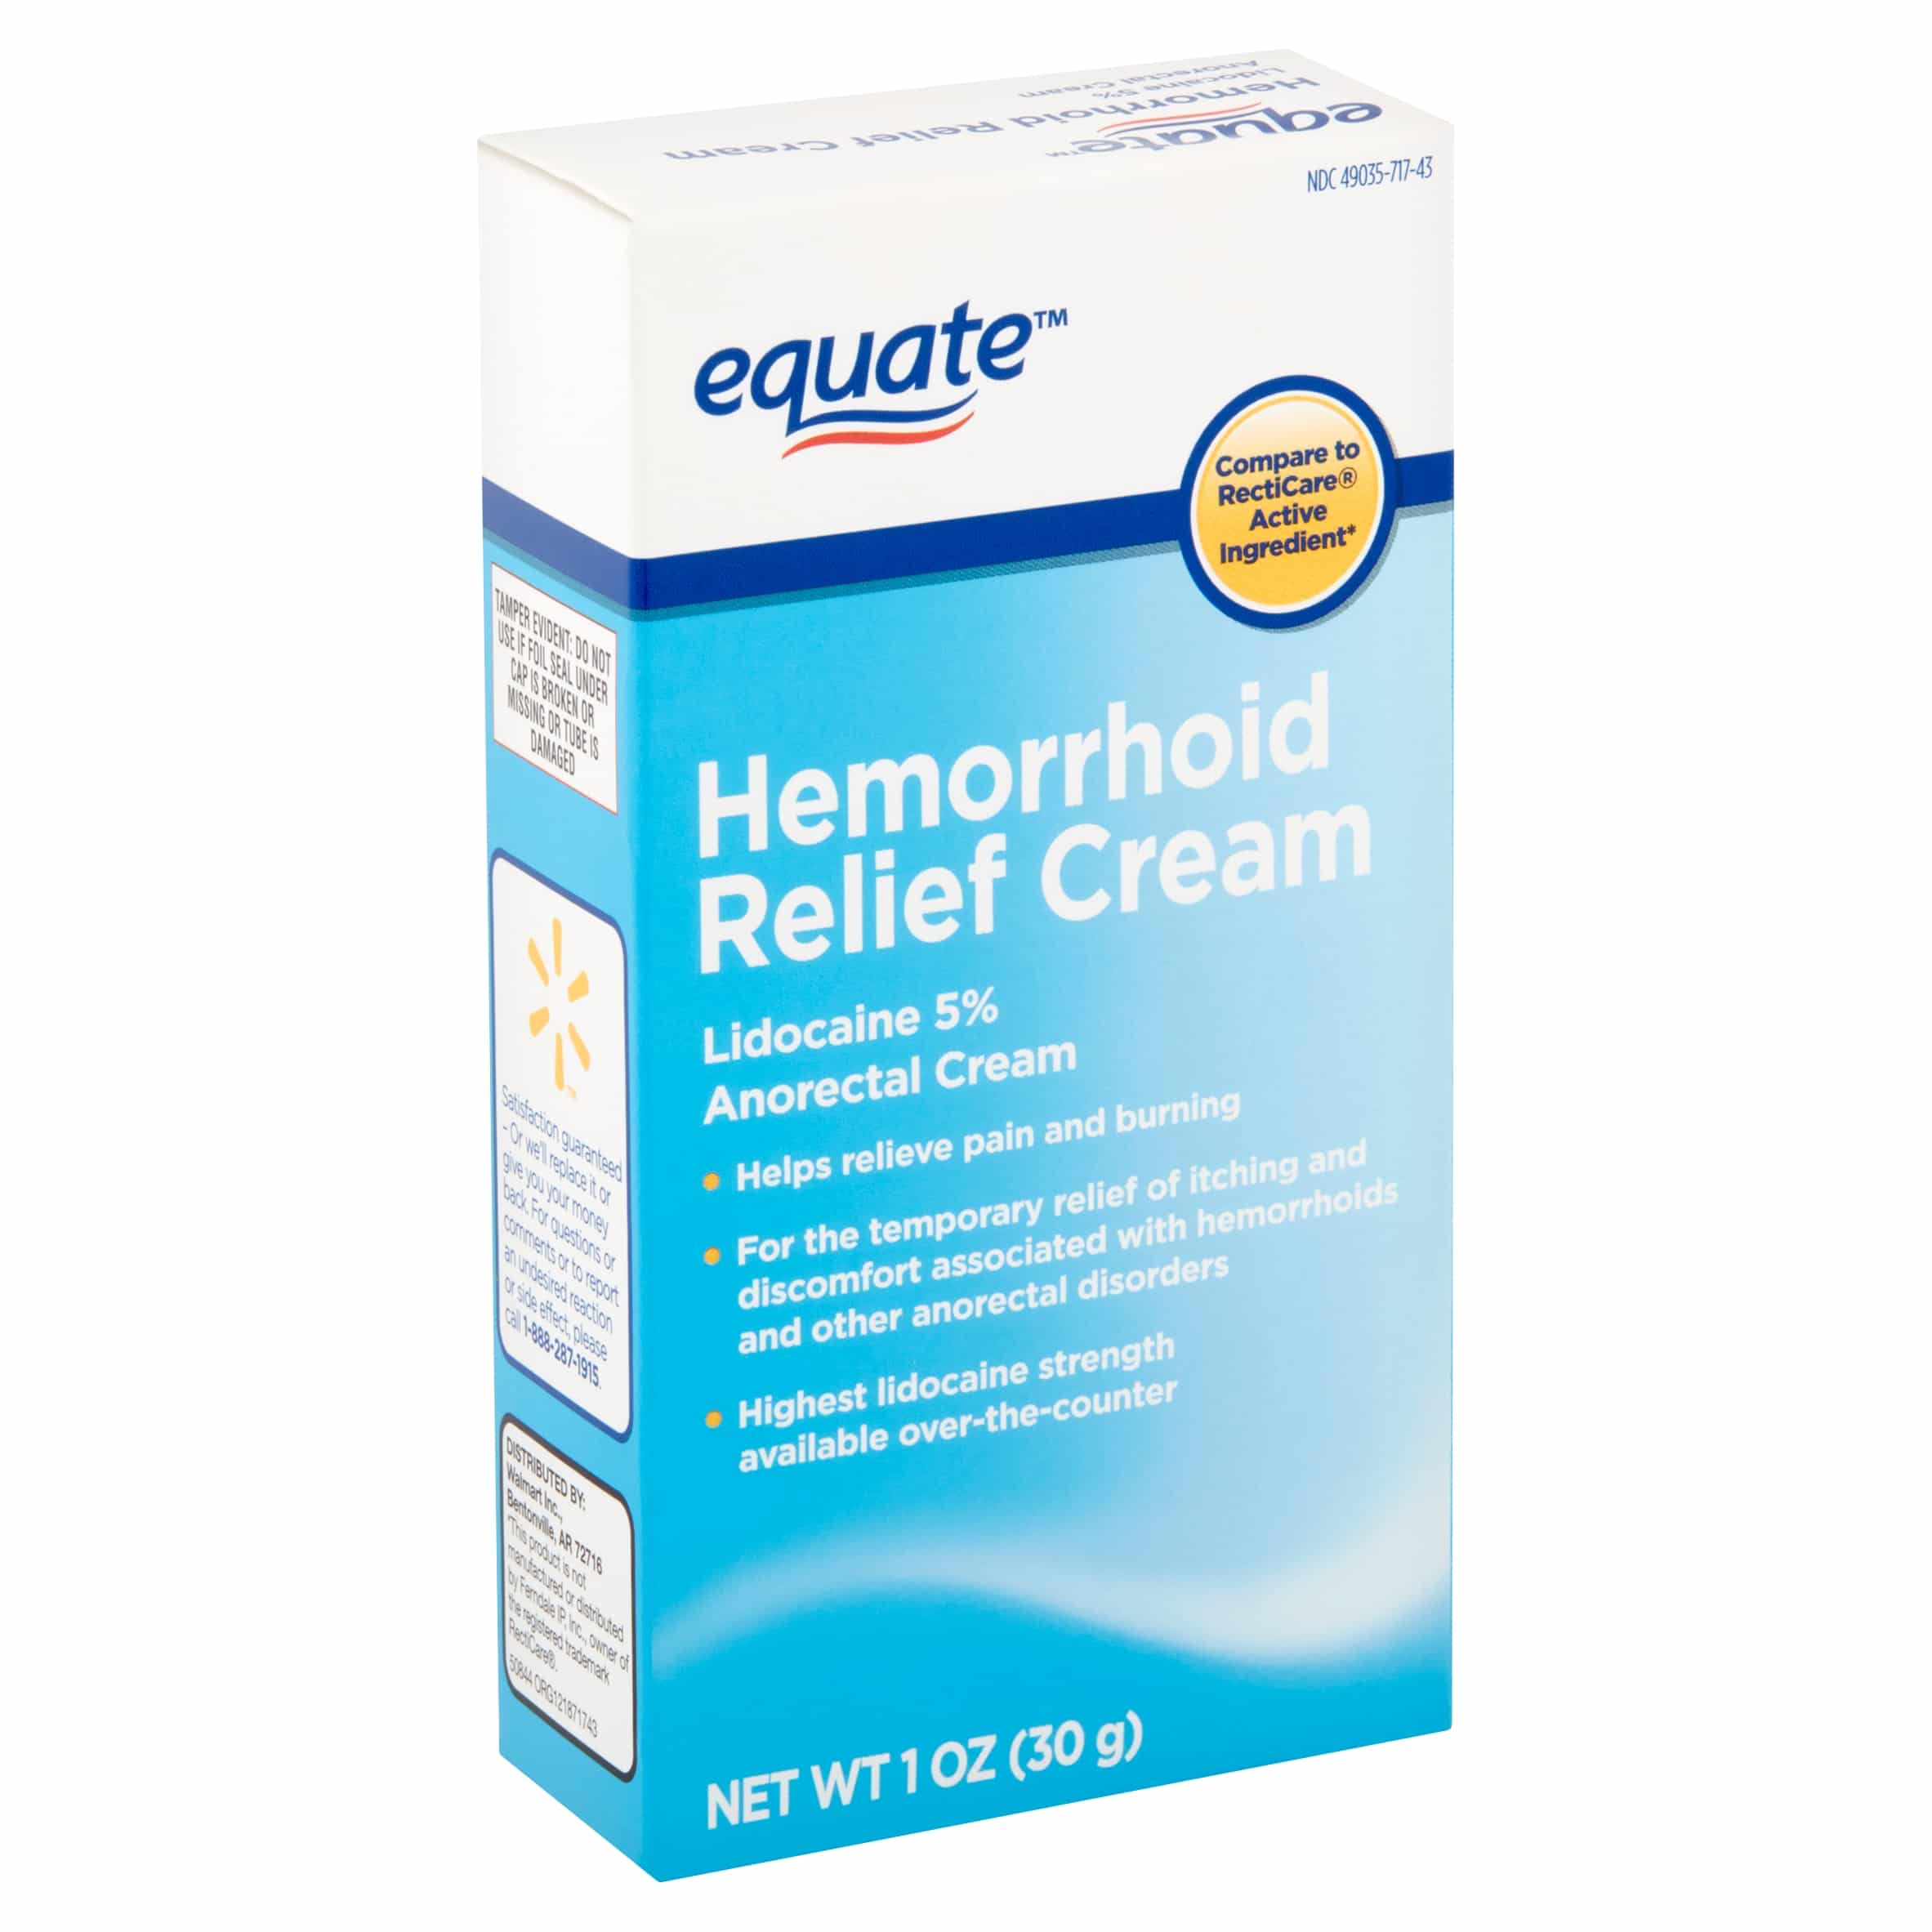 Equate Hemorrhoid Relief Cream, 1 Oz.